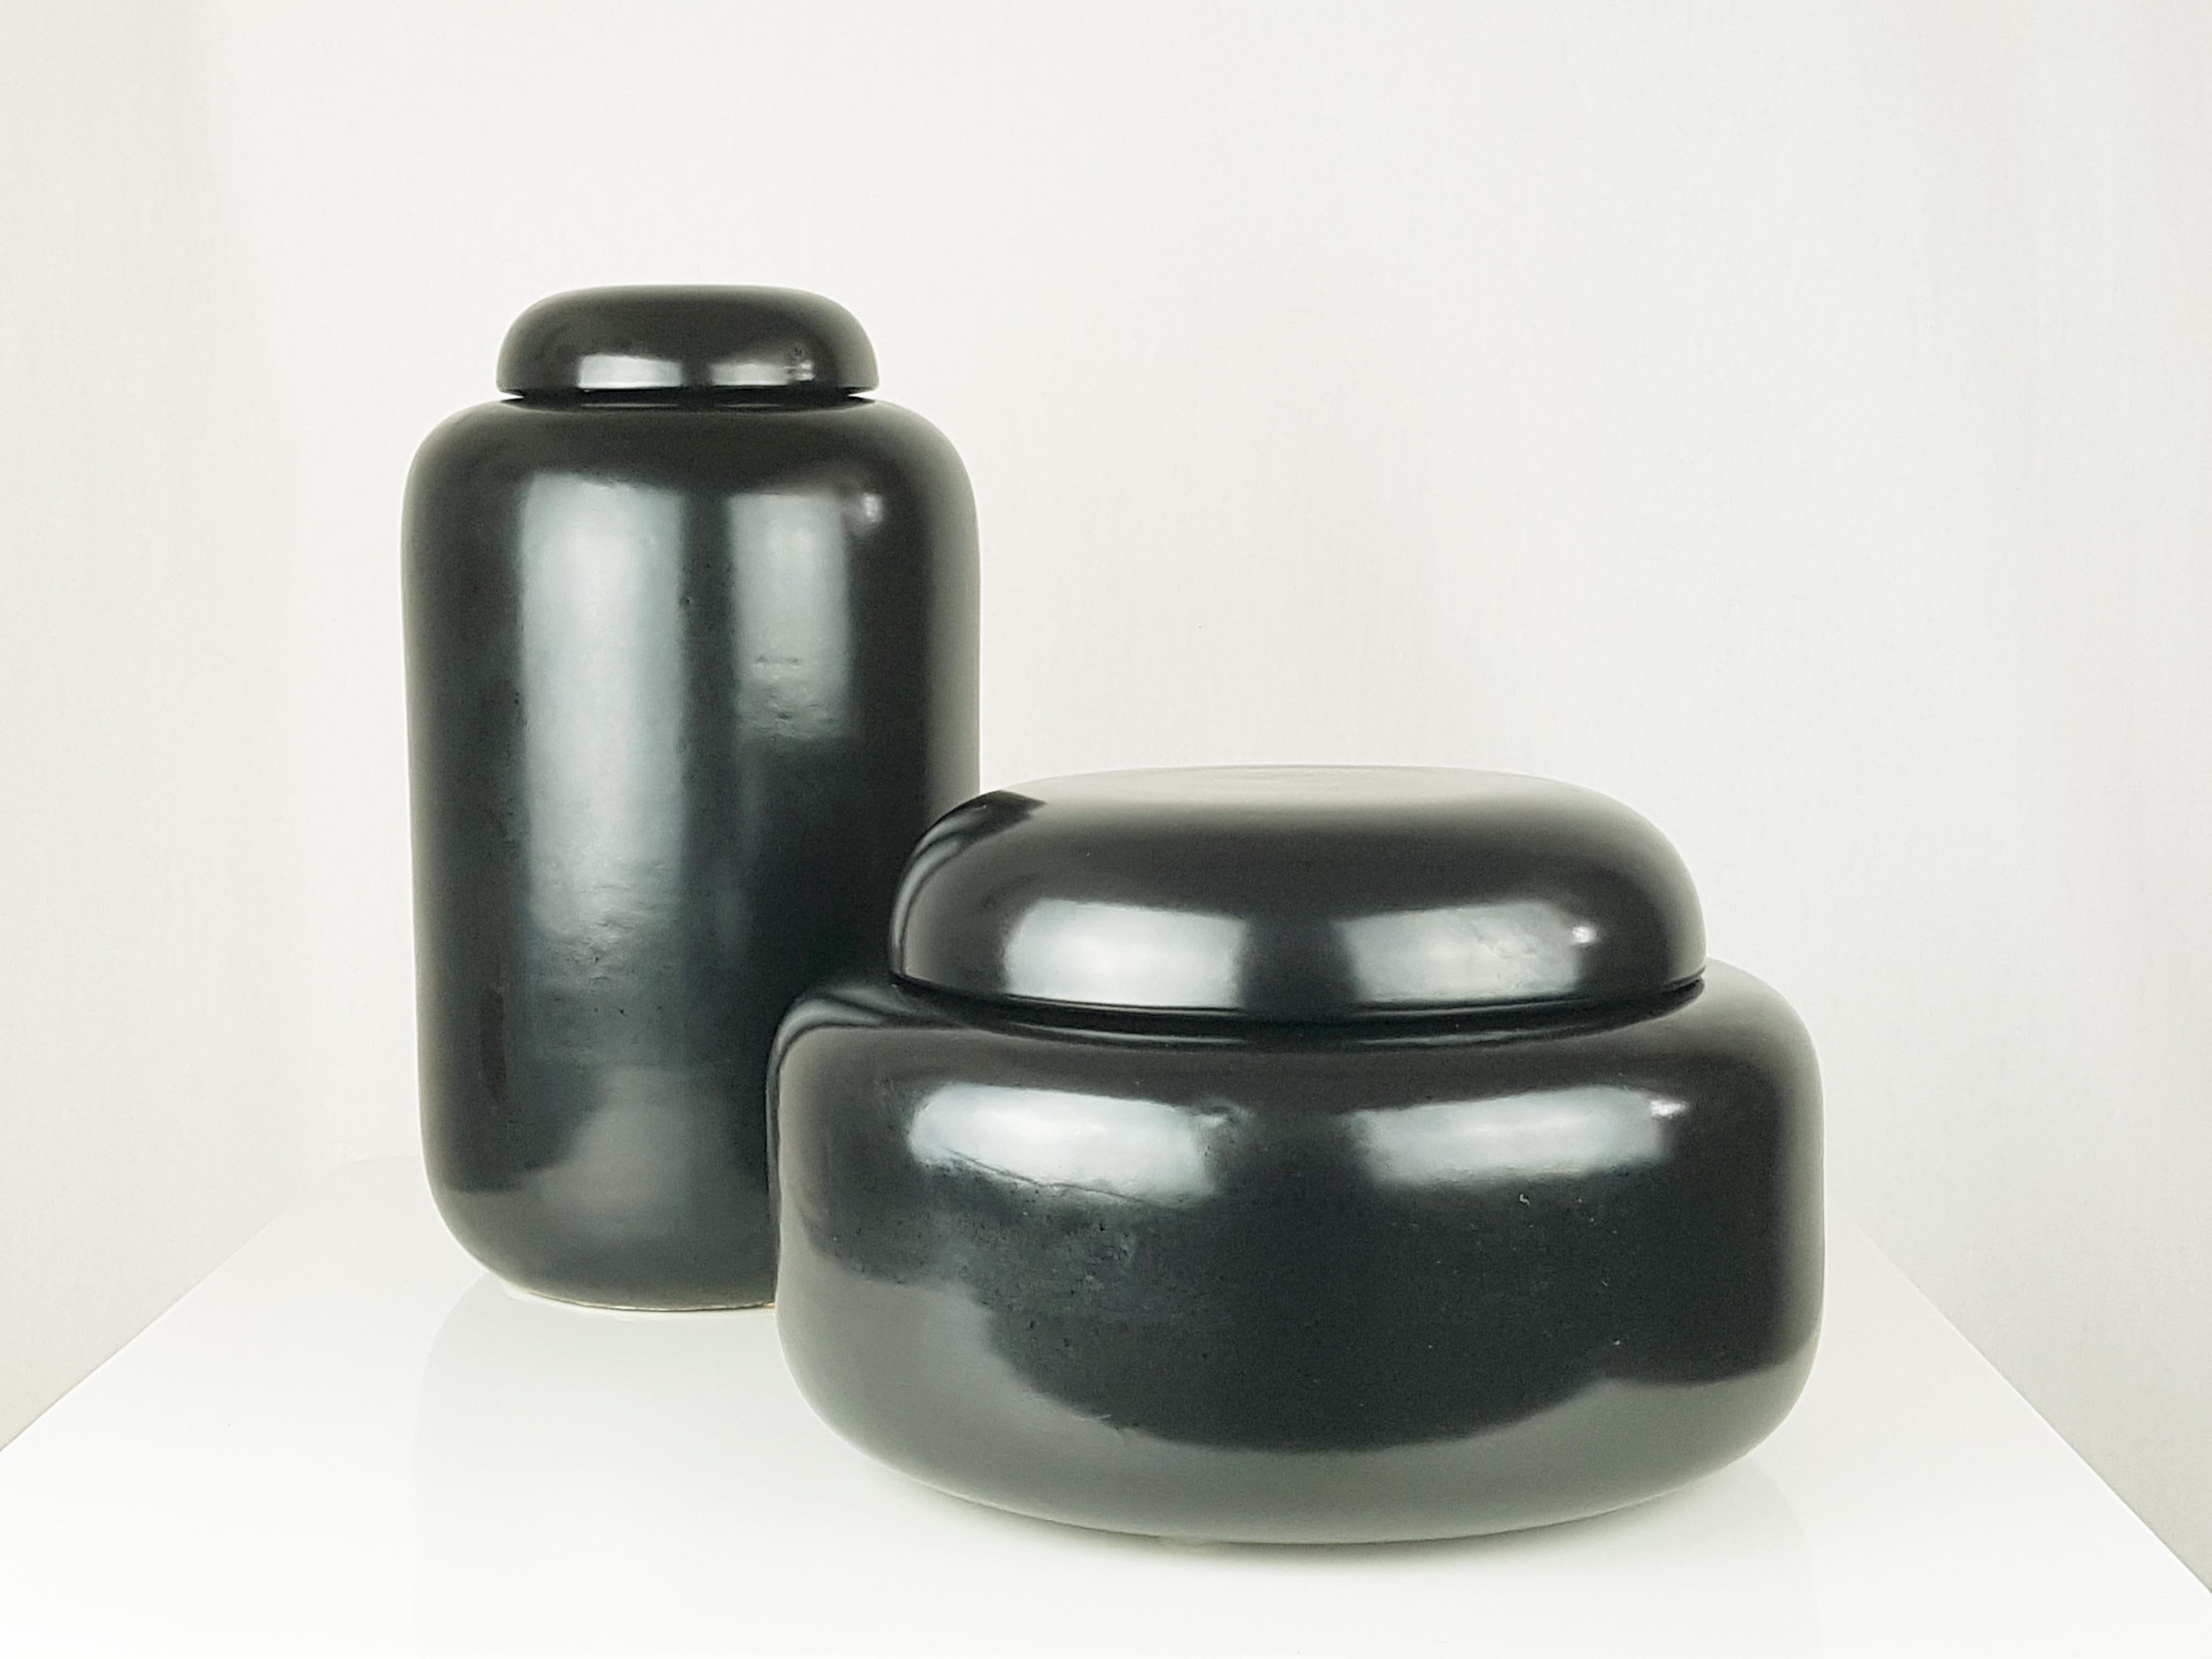 Ensemble de 2 boîtes en céramique noire produites en Italie entre les années 70 et 80. Etat neuf.
boîte haute : cm 31,5h x 18d
boîte basse : cm 27h x 17d.